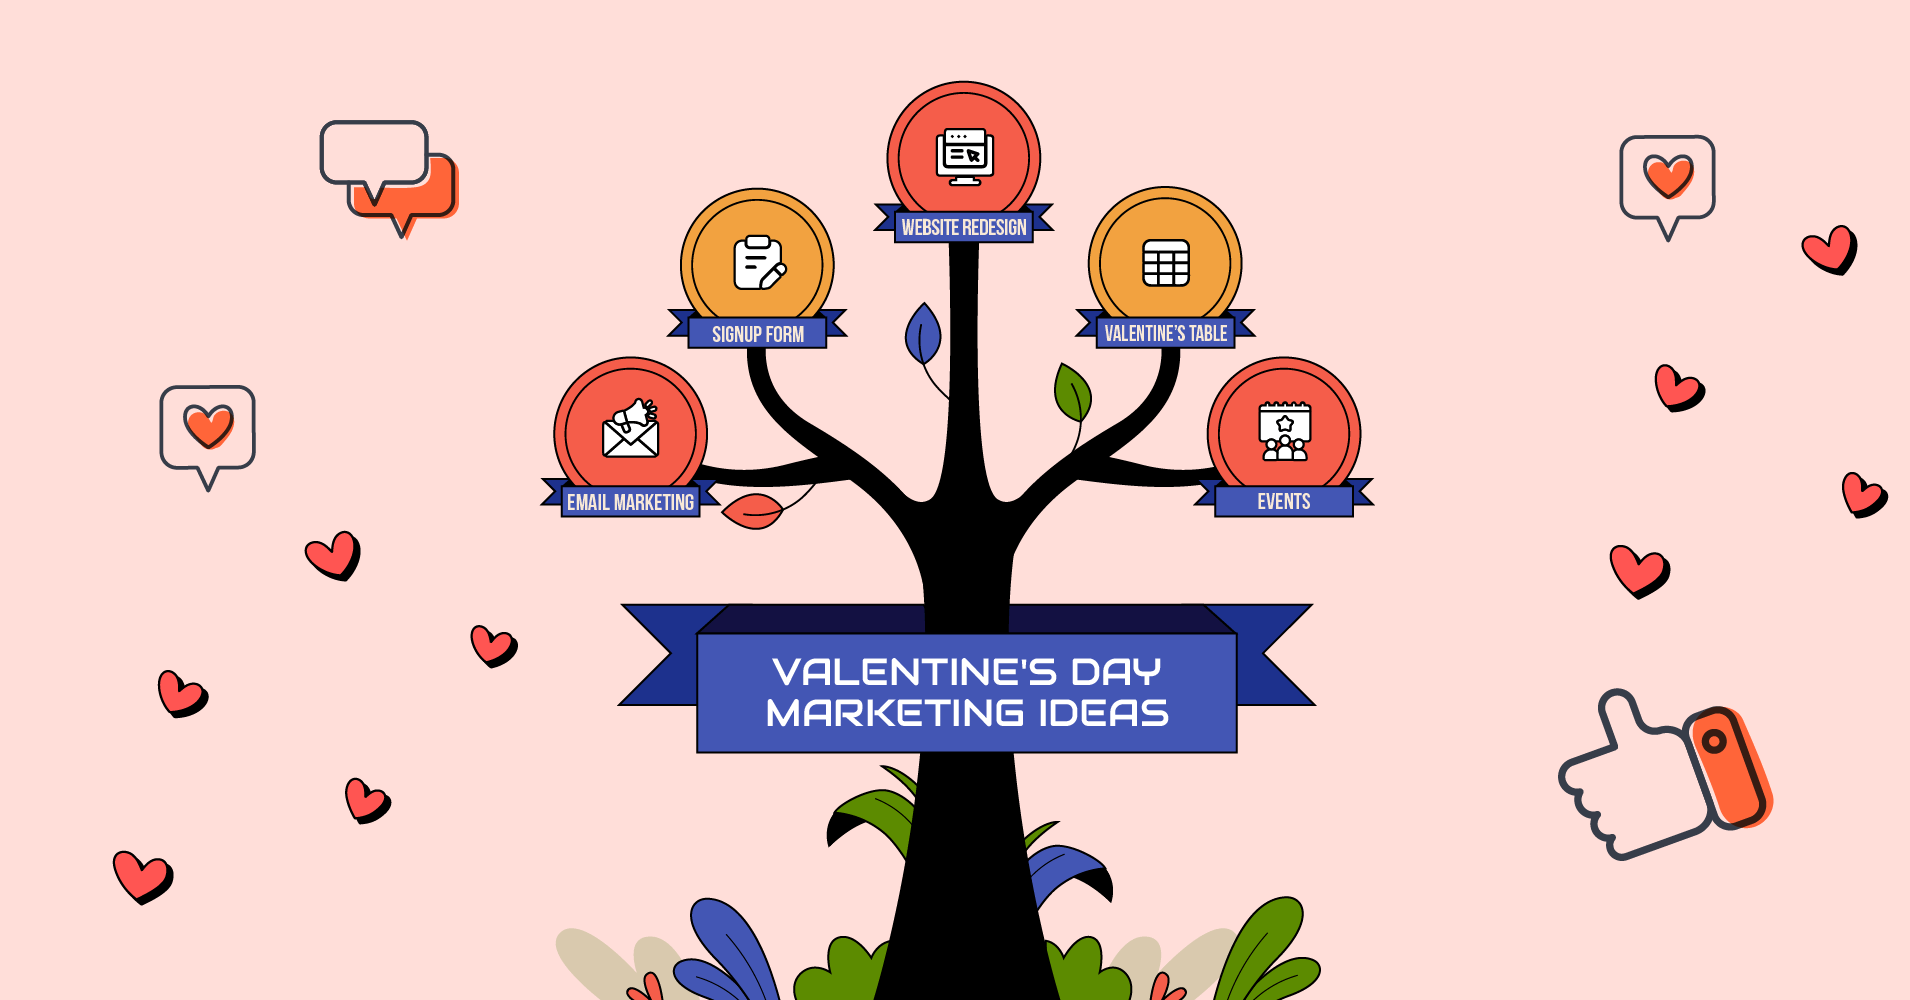 Valentine's day marketing ideas